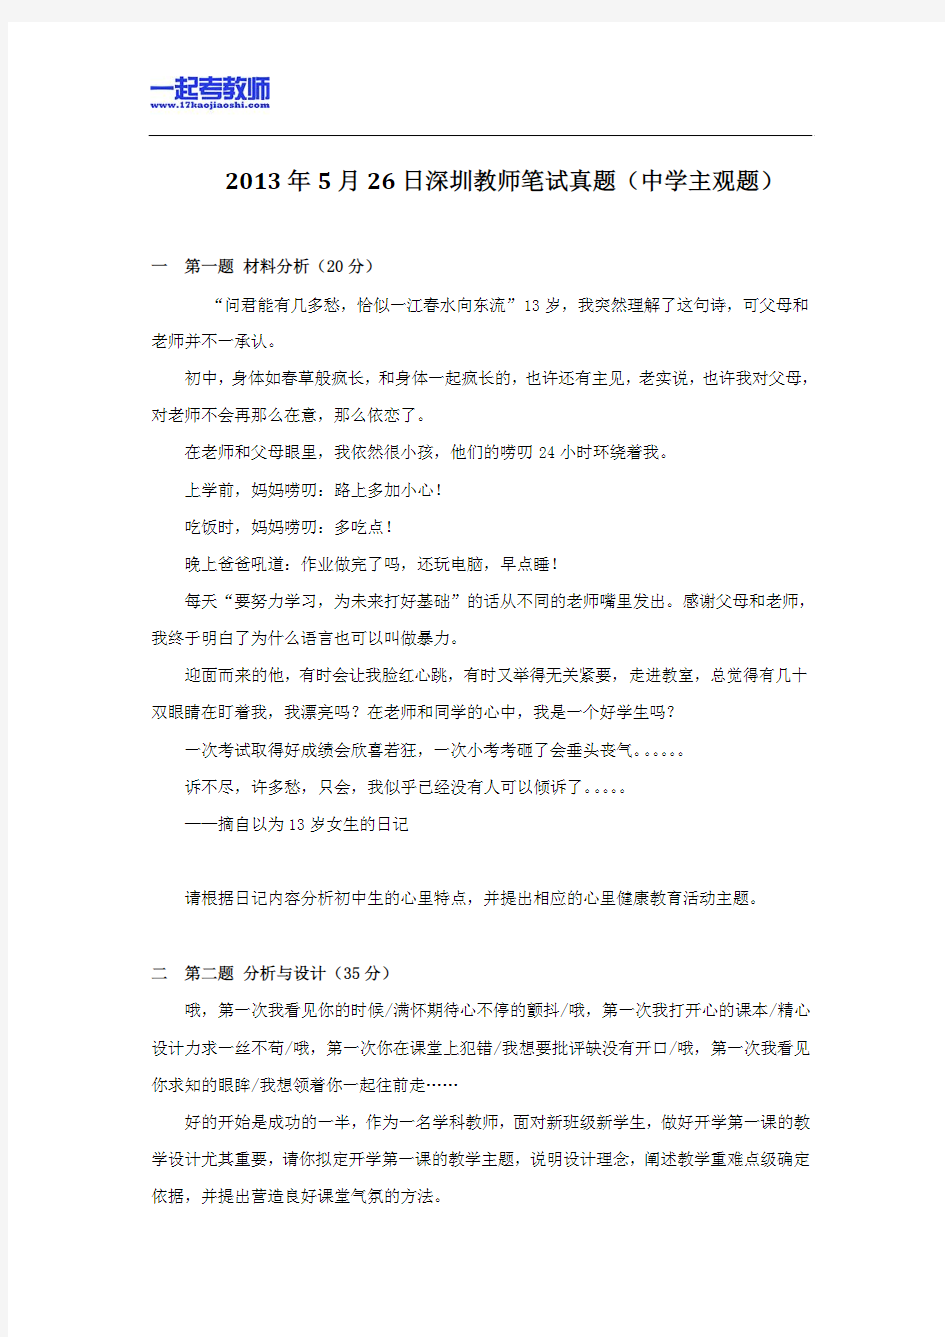 2013年05月深圳市教师招聘考试笔试教育综合主观题部分真题答案解析